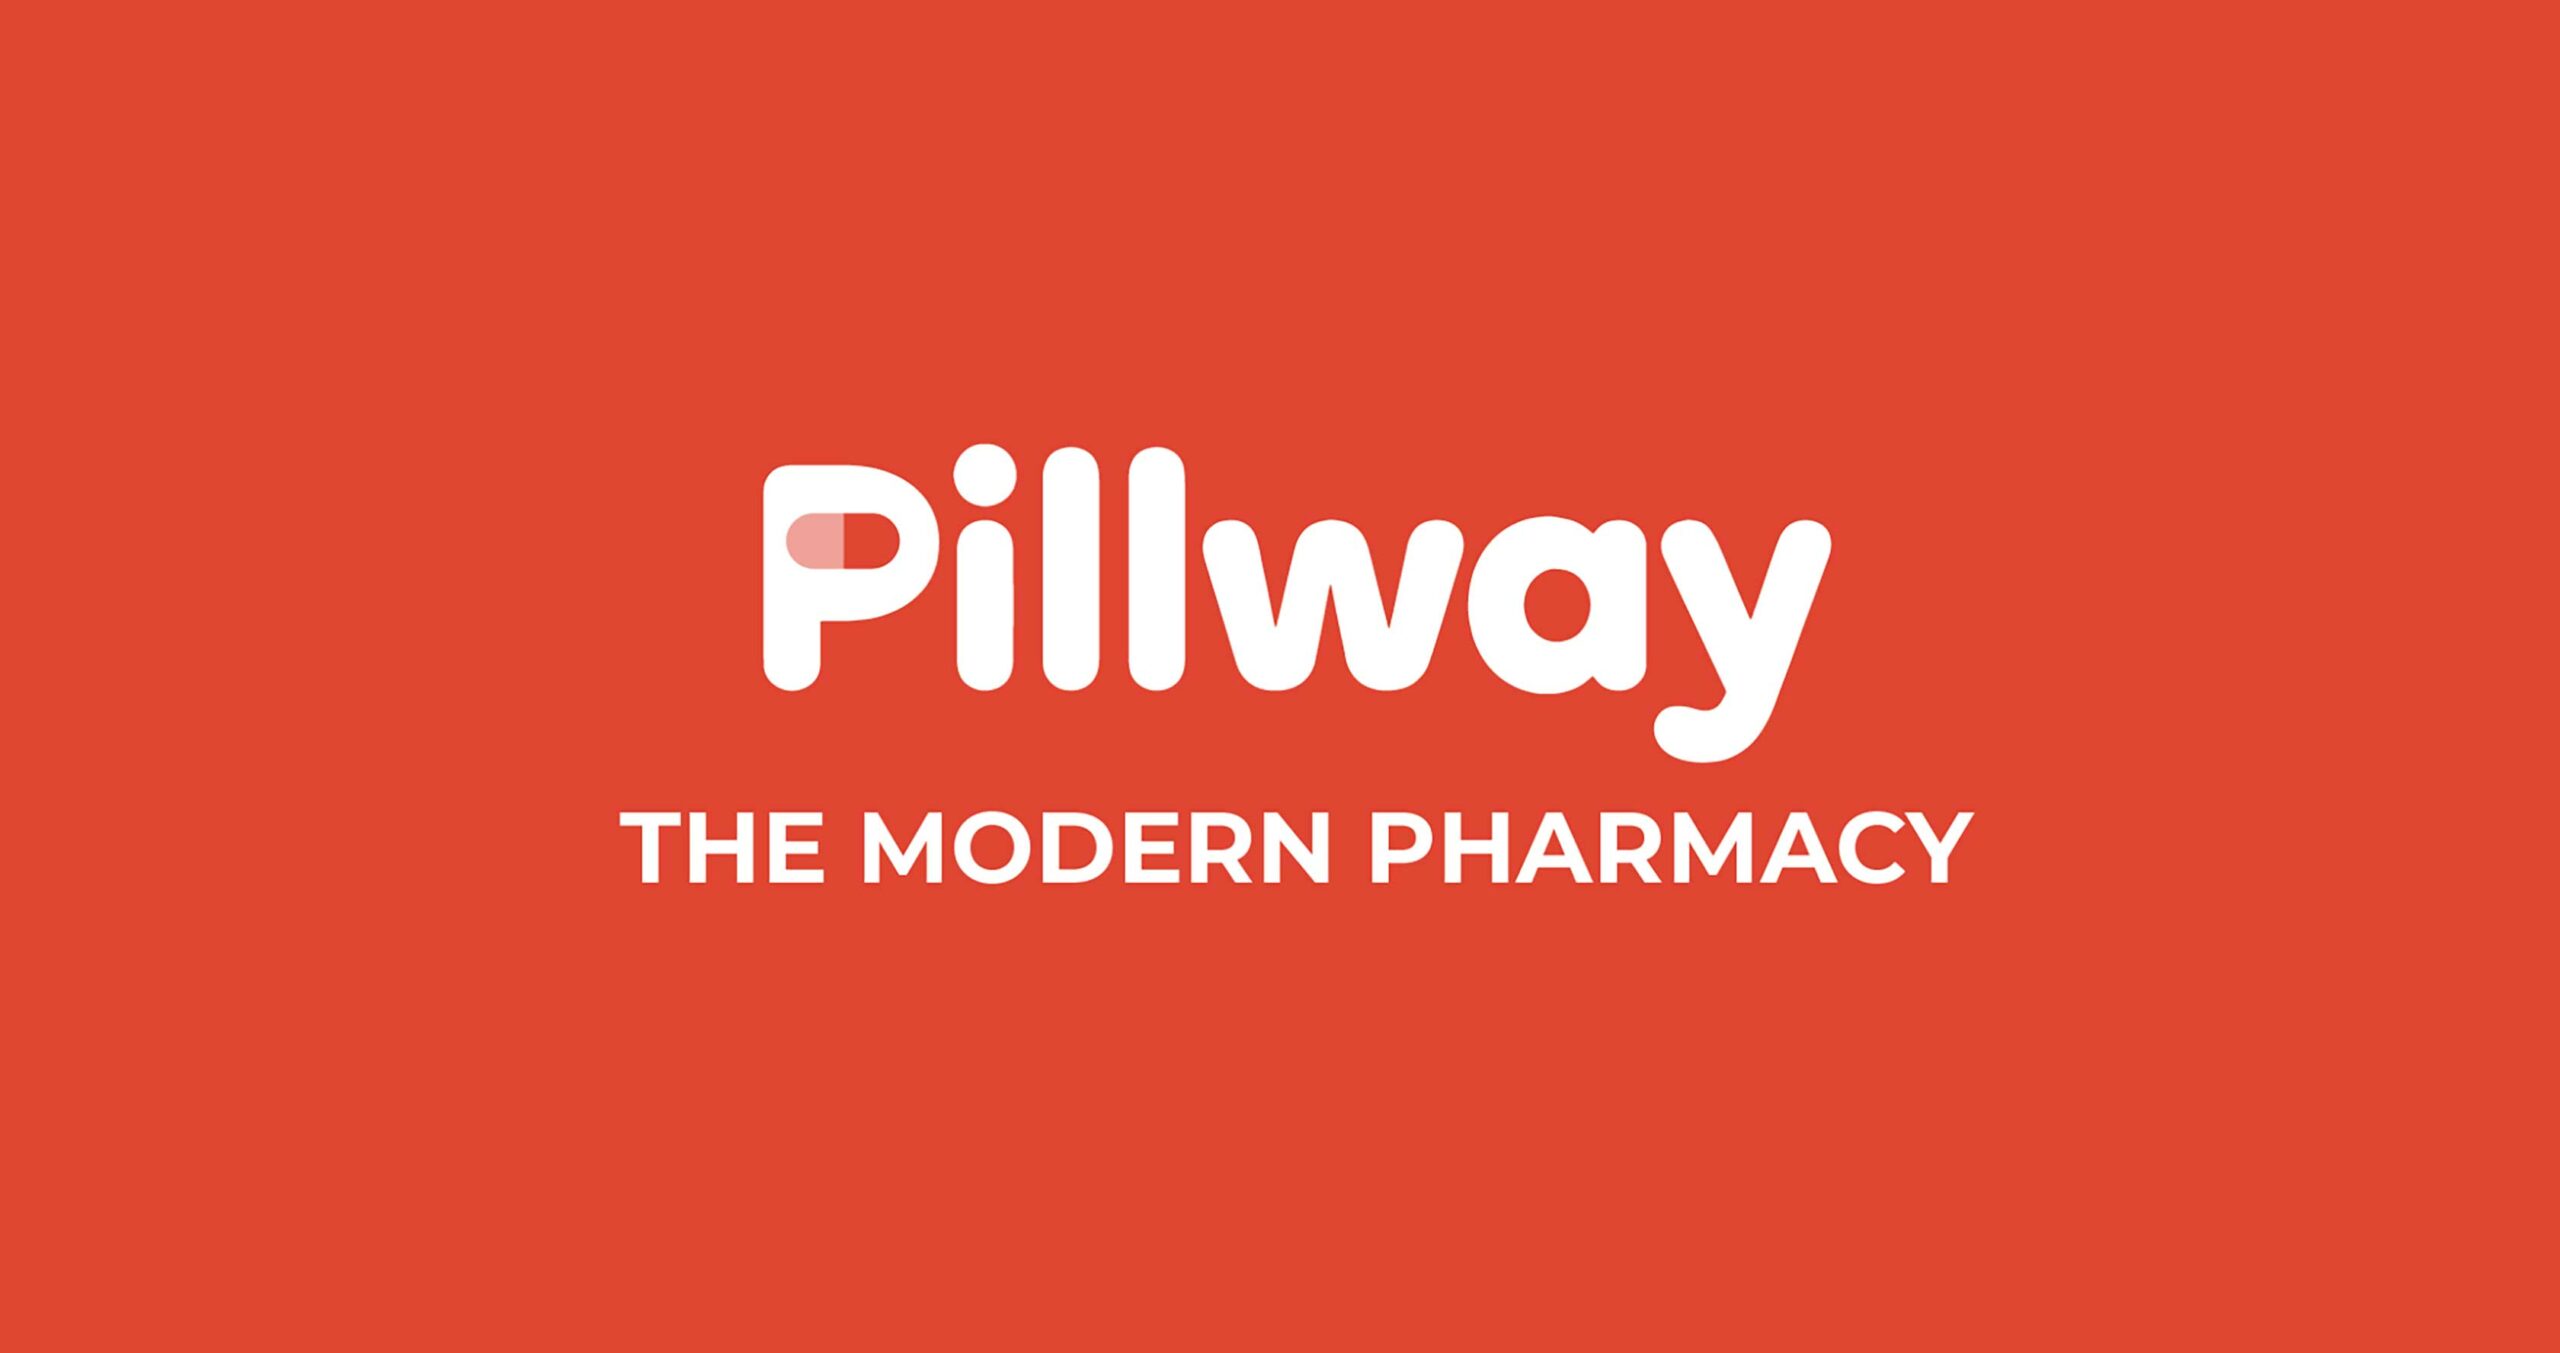 Pillway